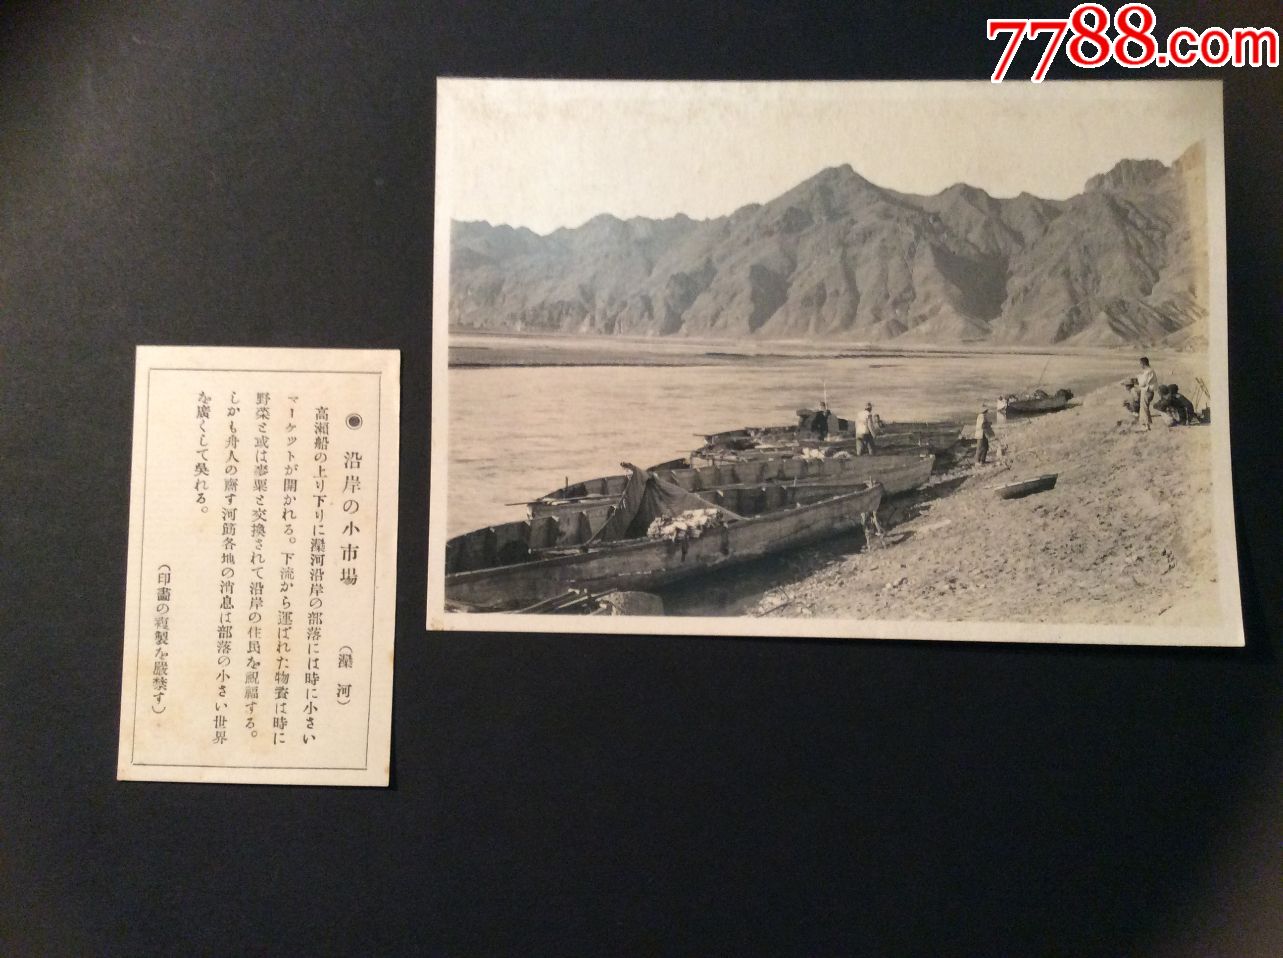 河北母亲河滦河平原,滦河的船只老照片2张,品相一流,十分清晰!